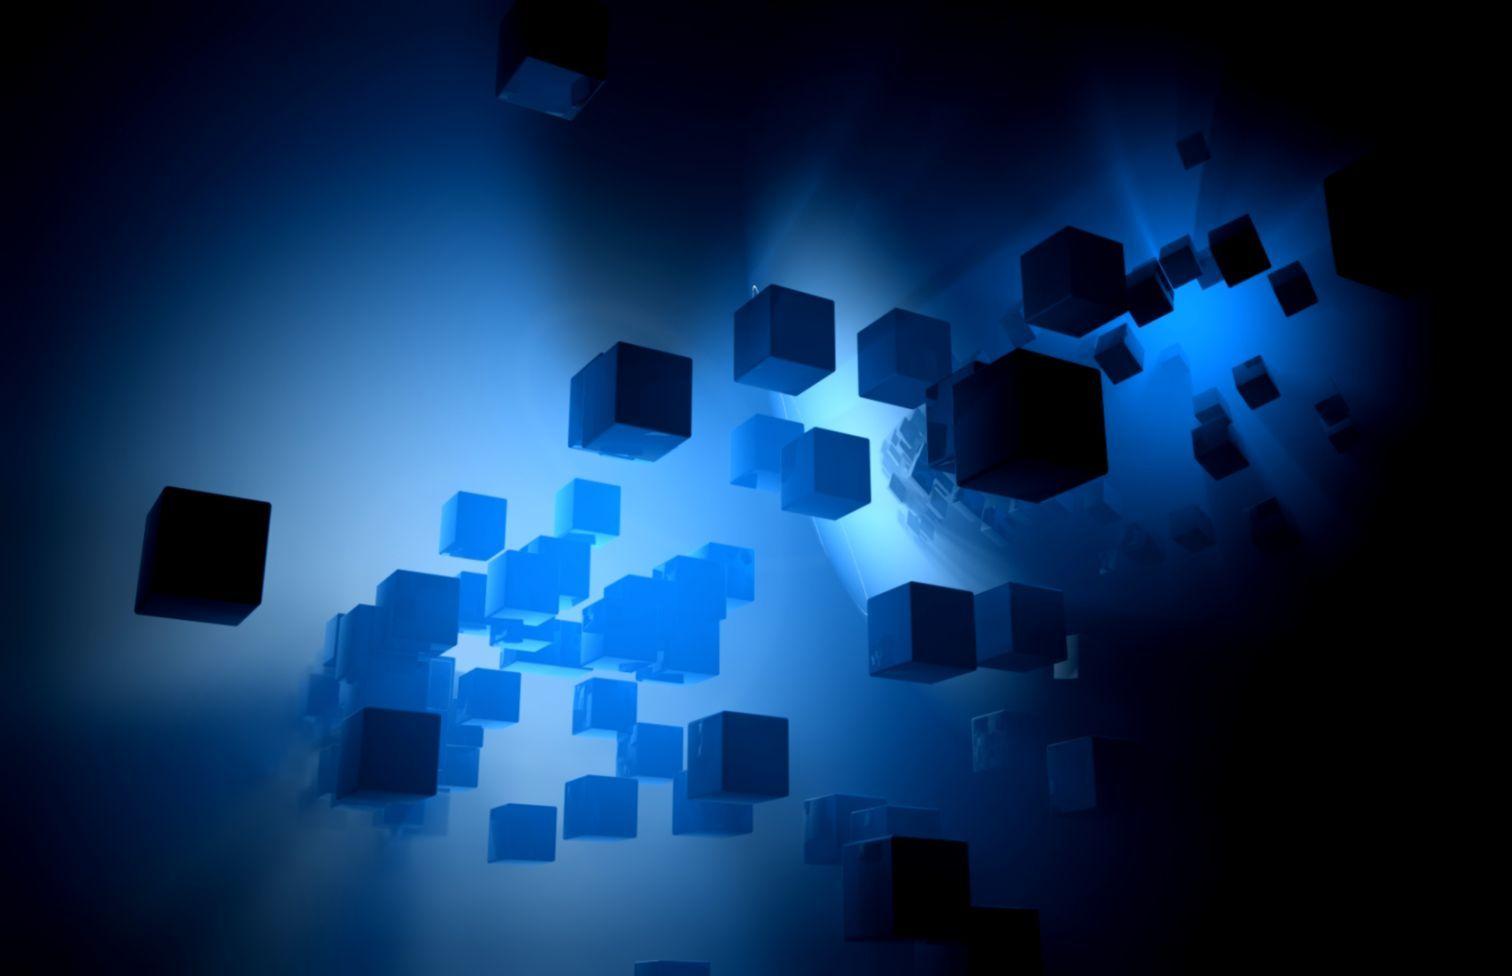 1512x976 Hình nền máy tính 3D Blue Cube hoạt hình